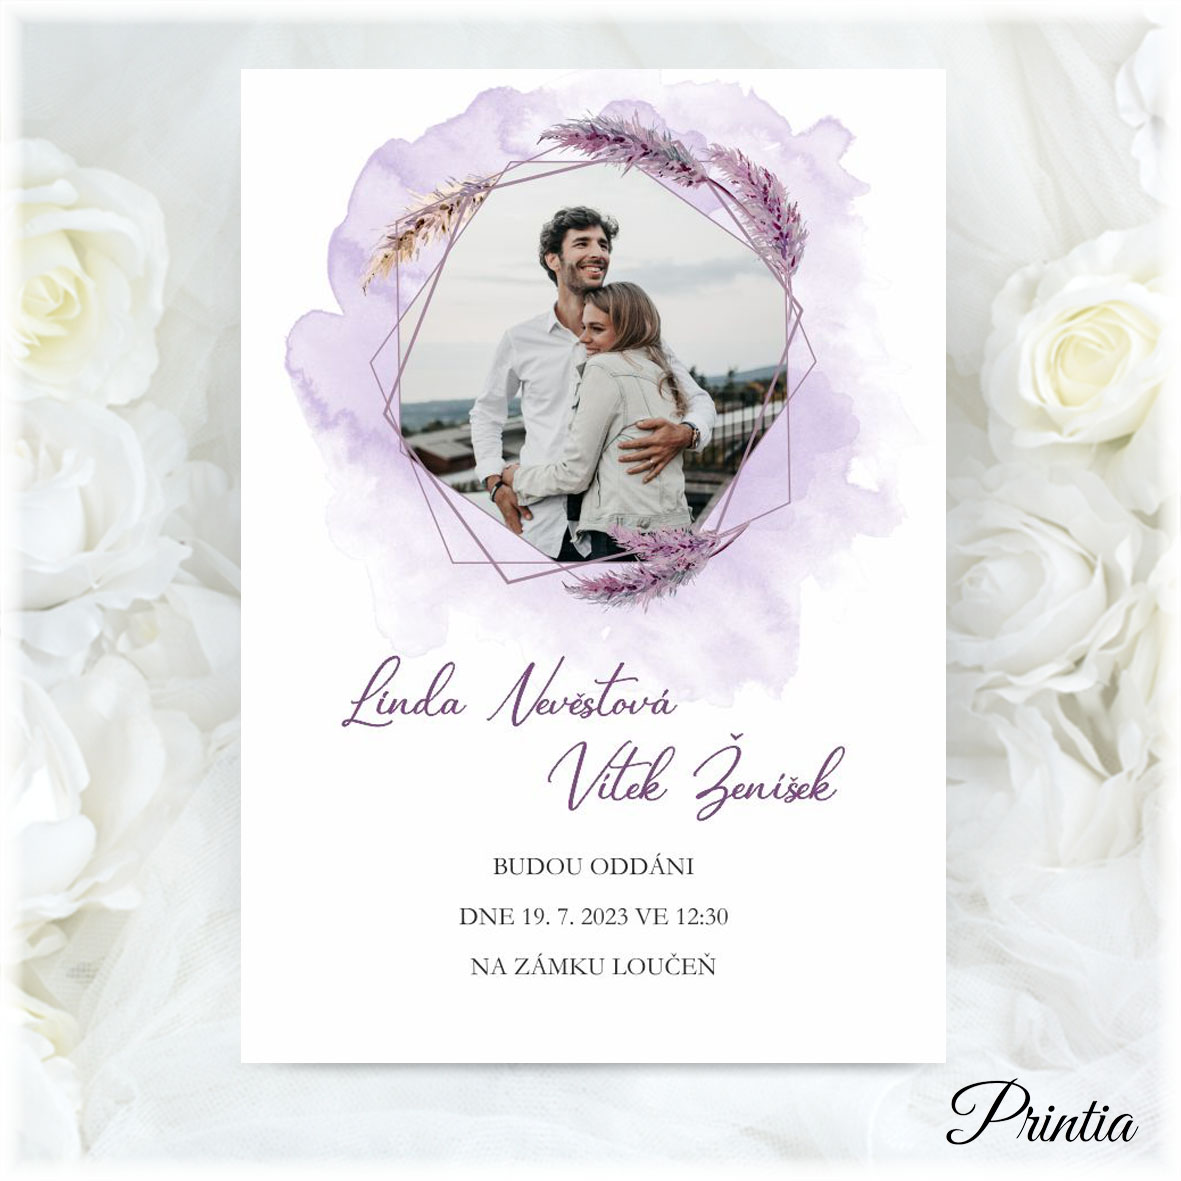 Svatební oznámení s fotografií v lila barvě